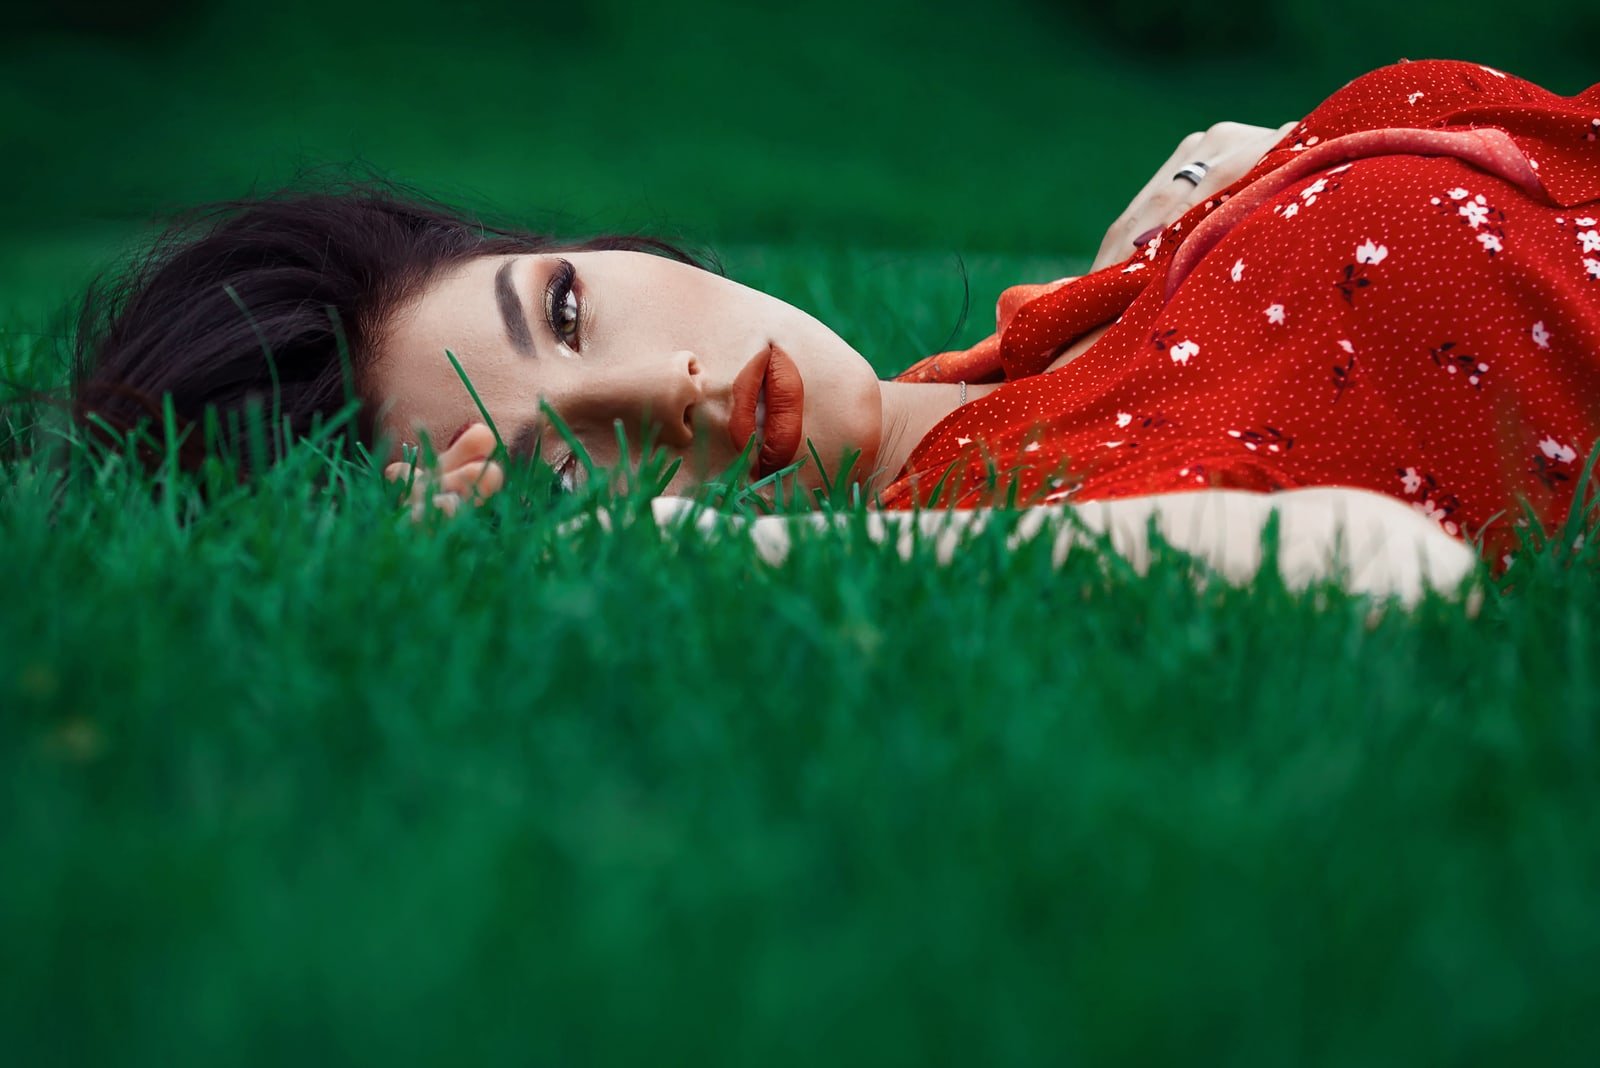 la donna giace sull'erba